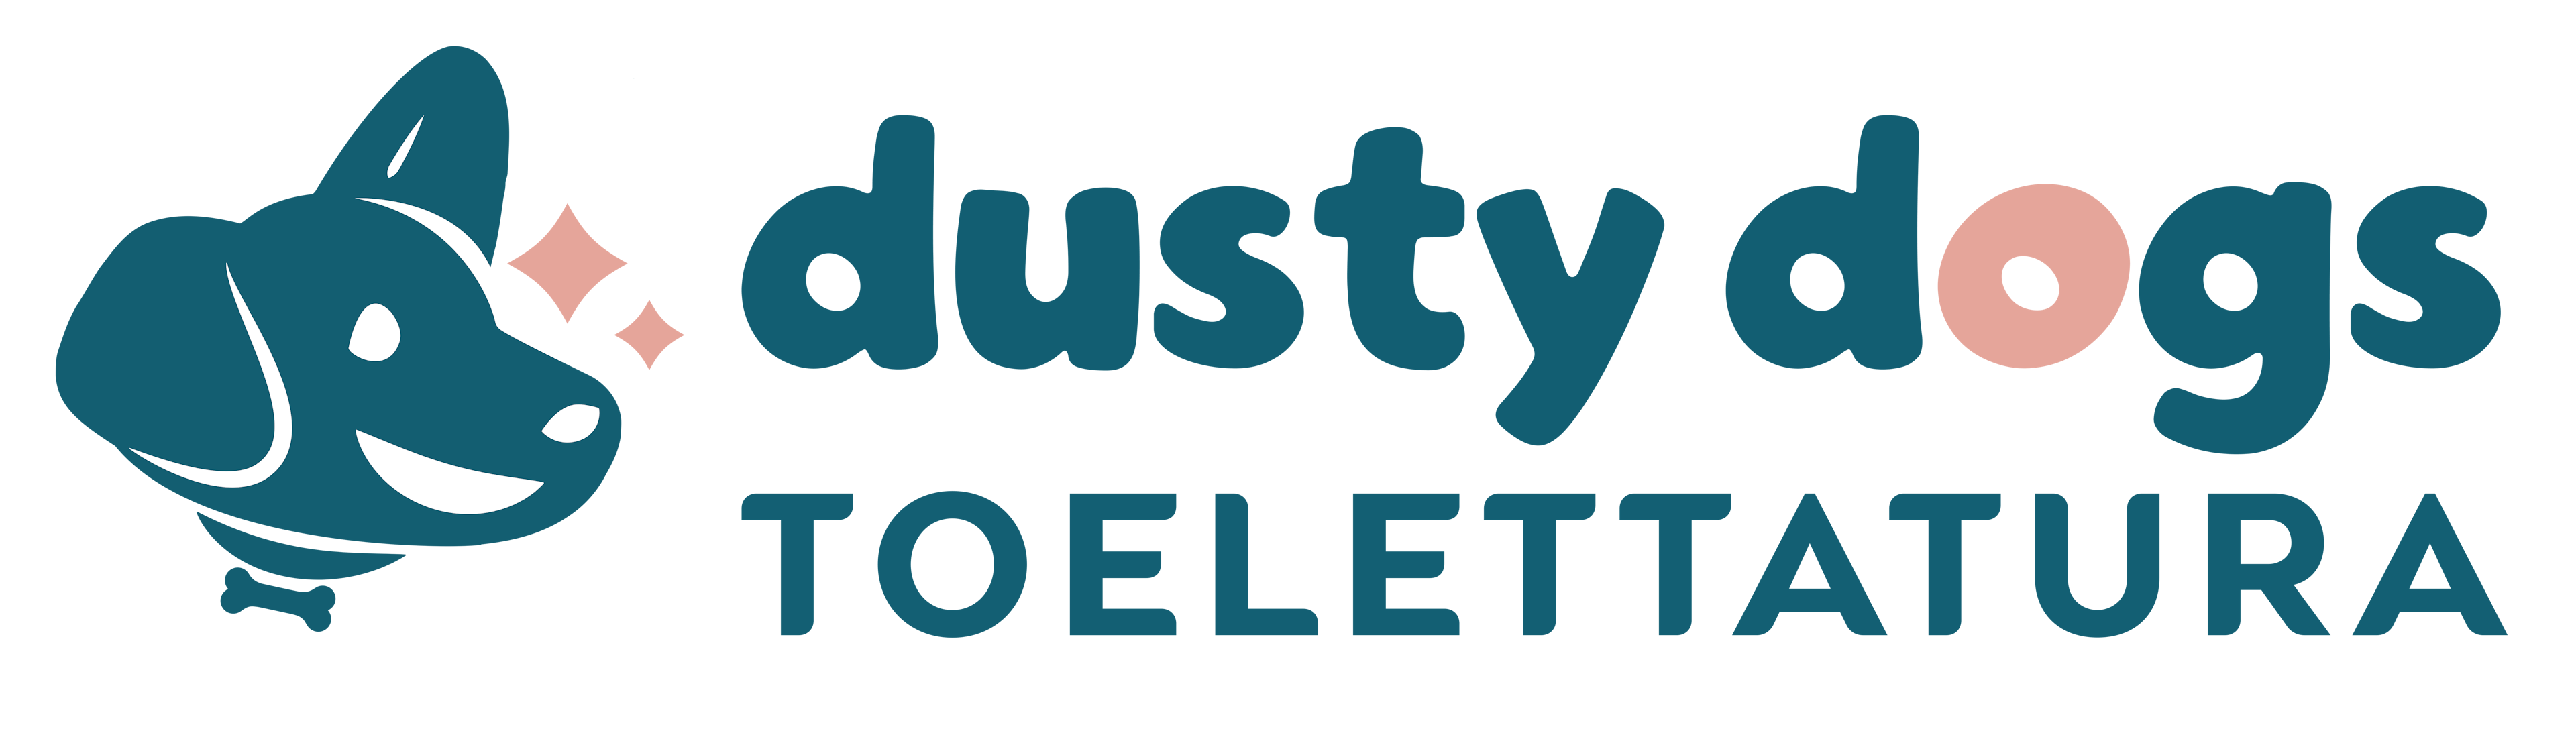 Logo Dusty Dogs